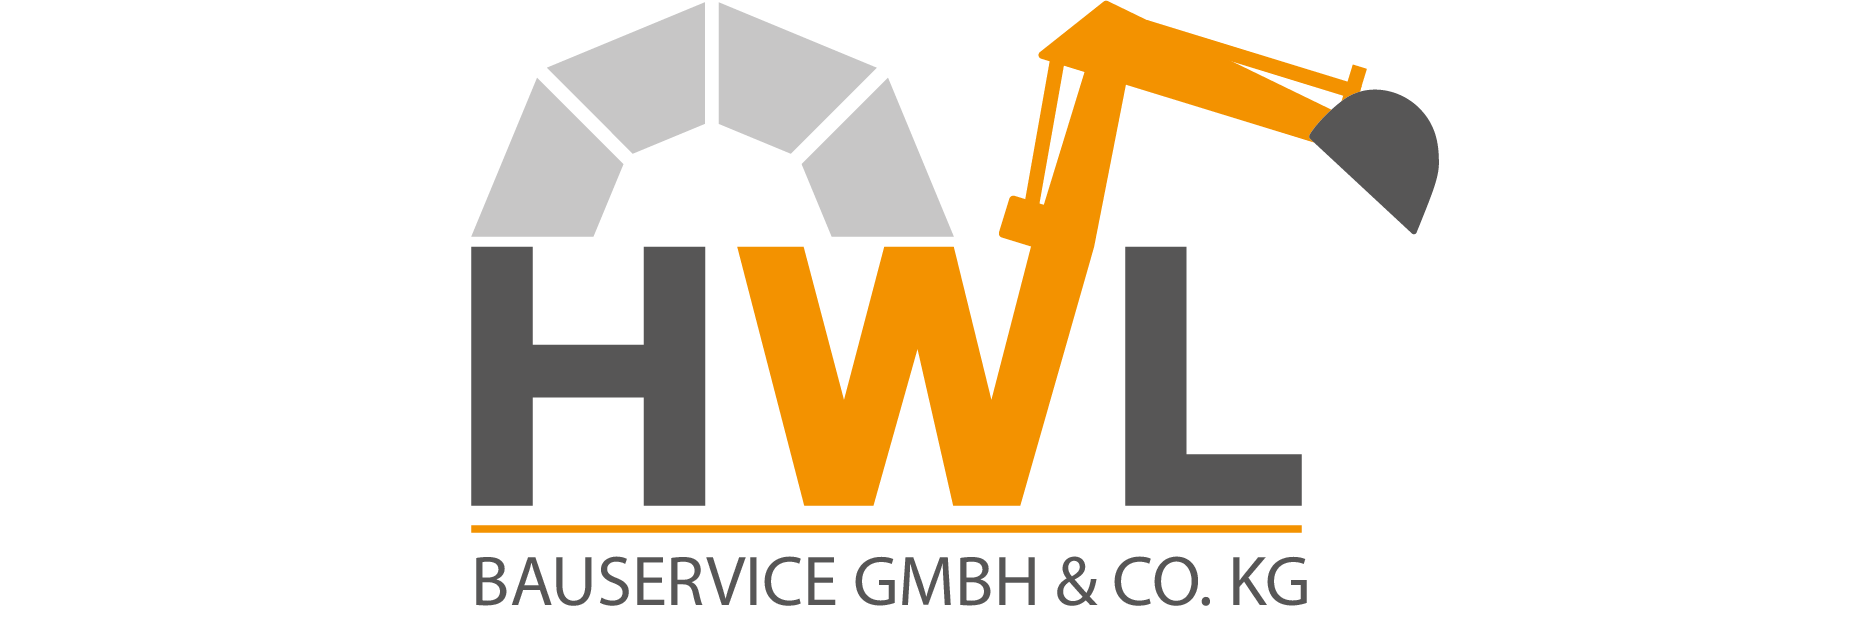 Willkommen bei HWL Bauservice